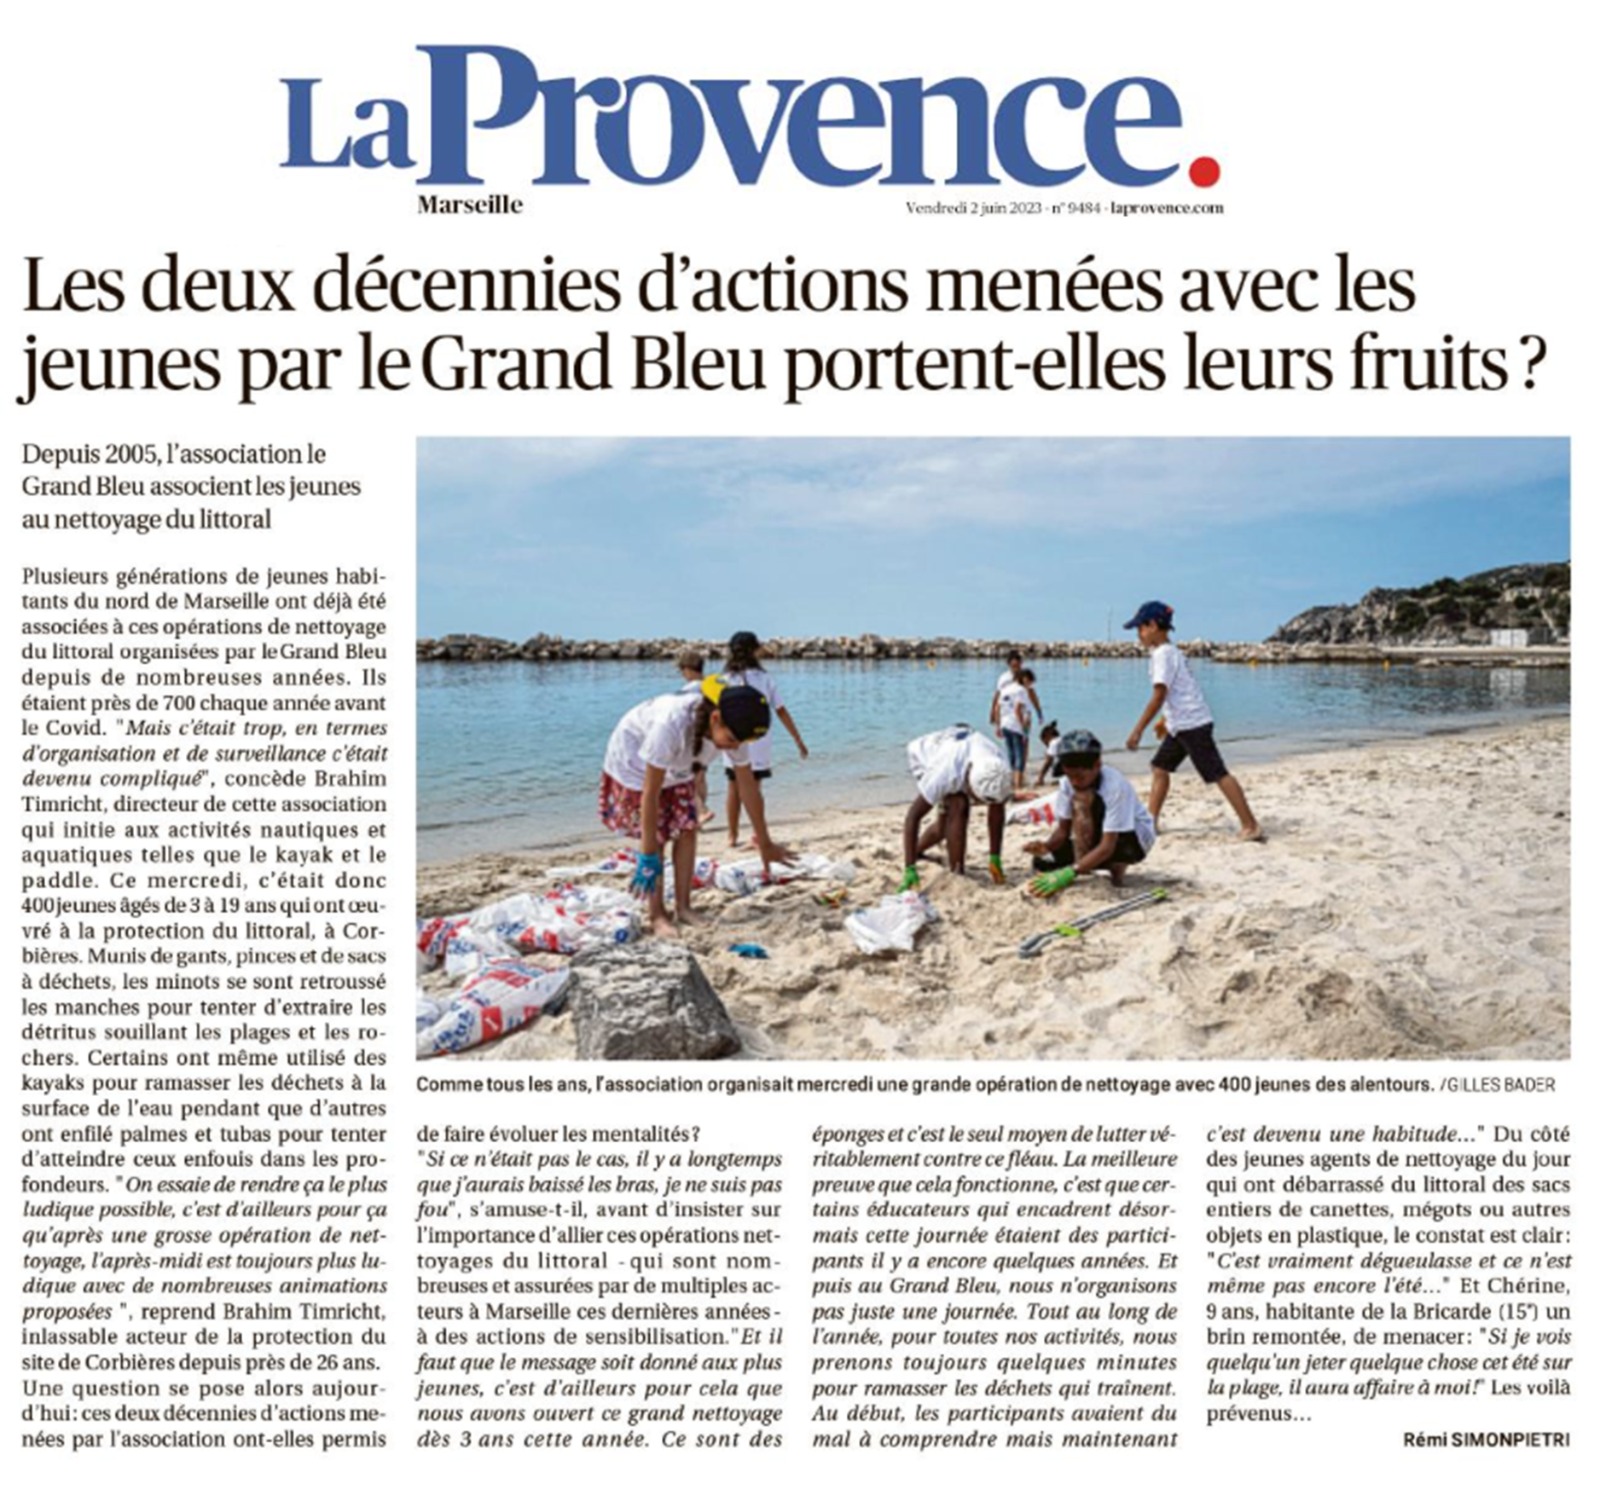 2023 - La Provence - Les deux décennies d’actions menées avec les jeunes par le Grand Bleu portent-elles leurs fruits